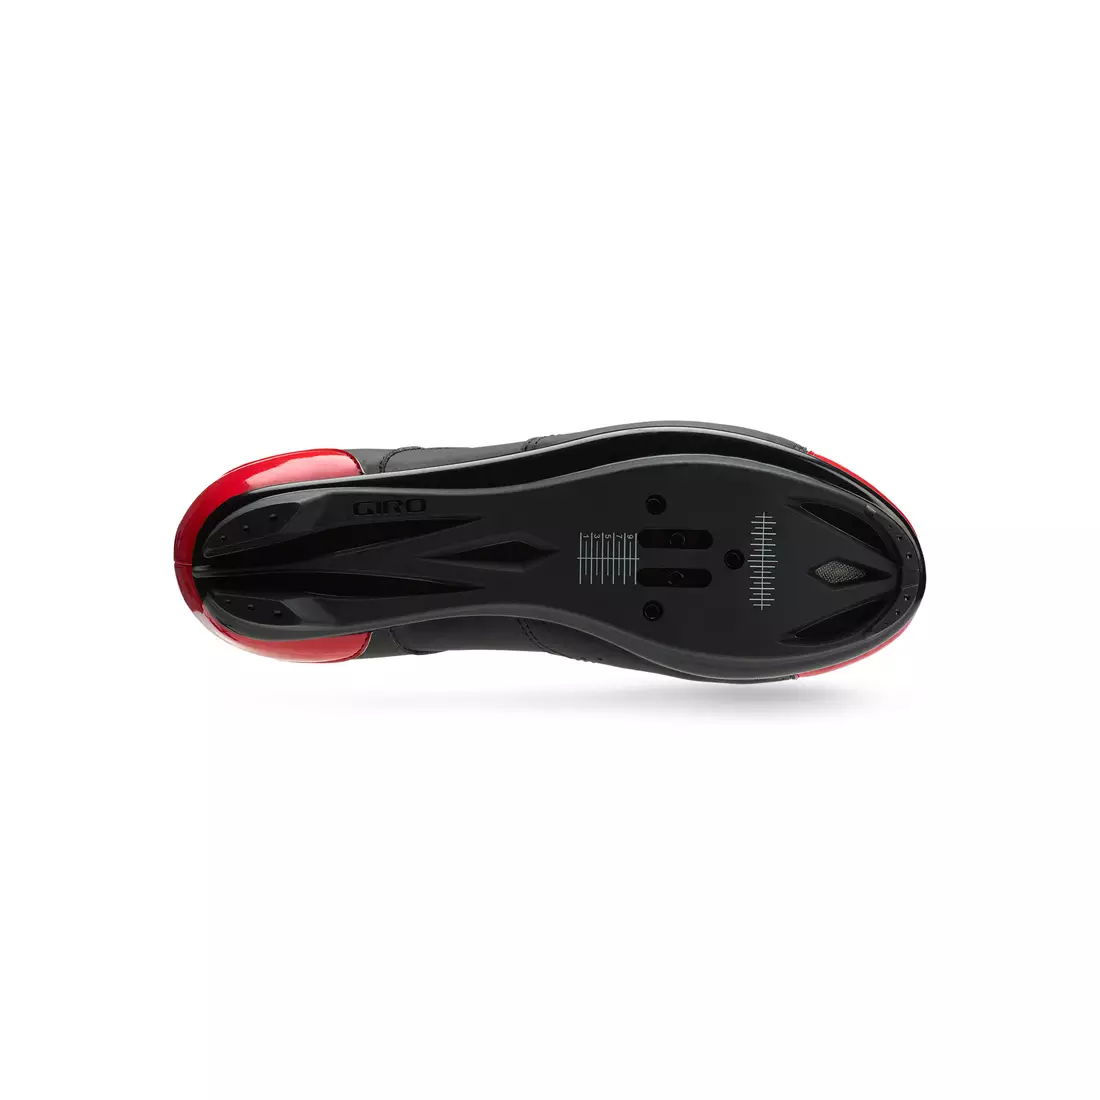 Pánská cyklistická obuv GIRO SAVIX bright red black 